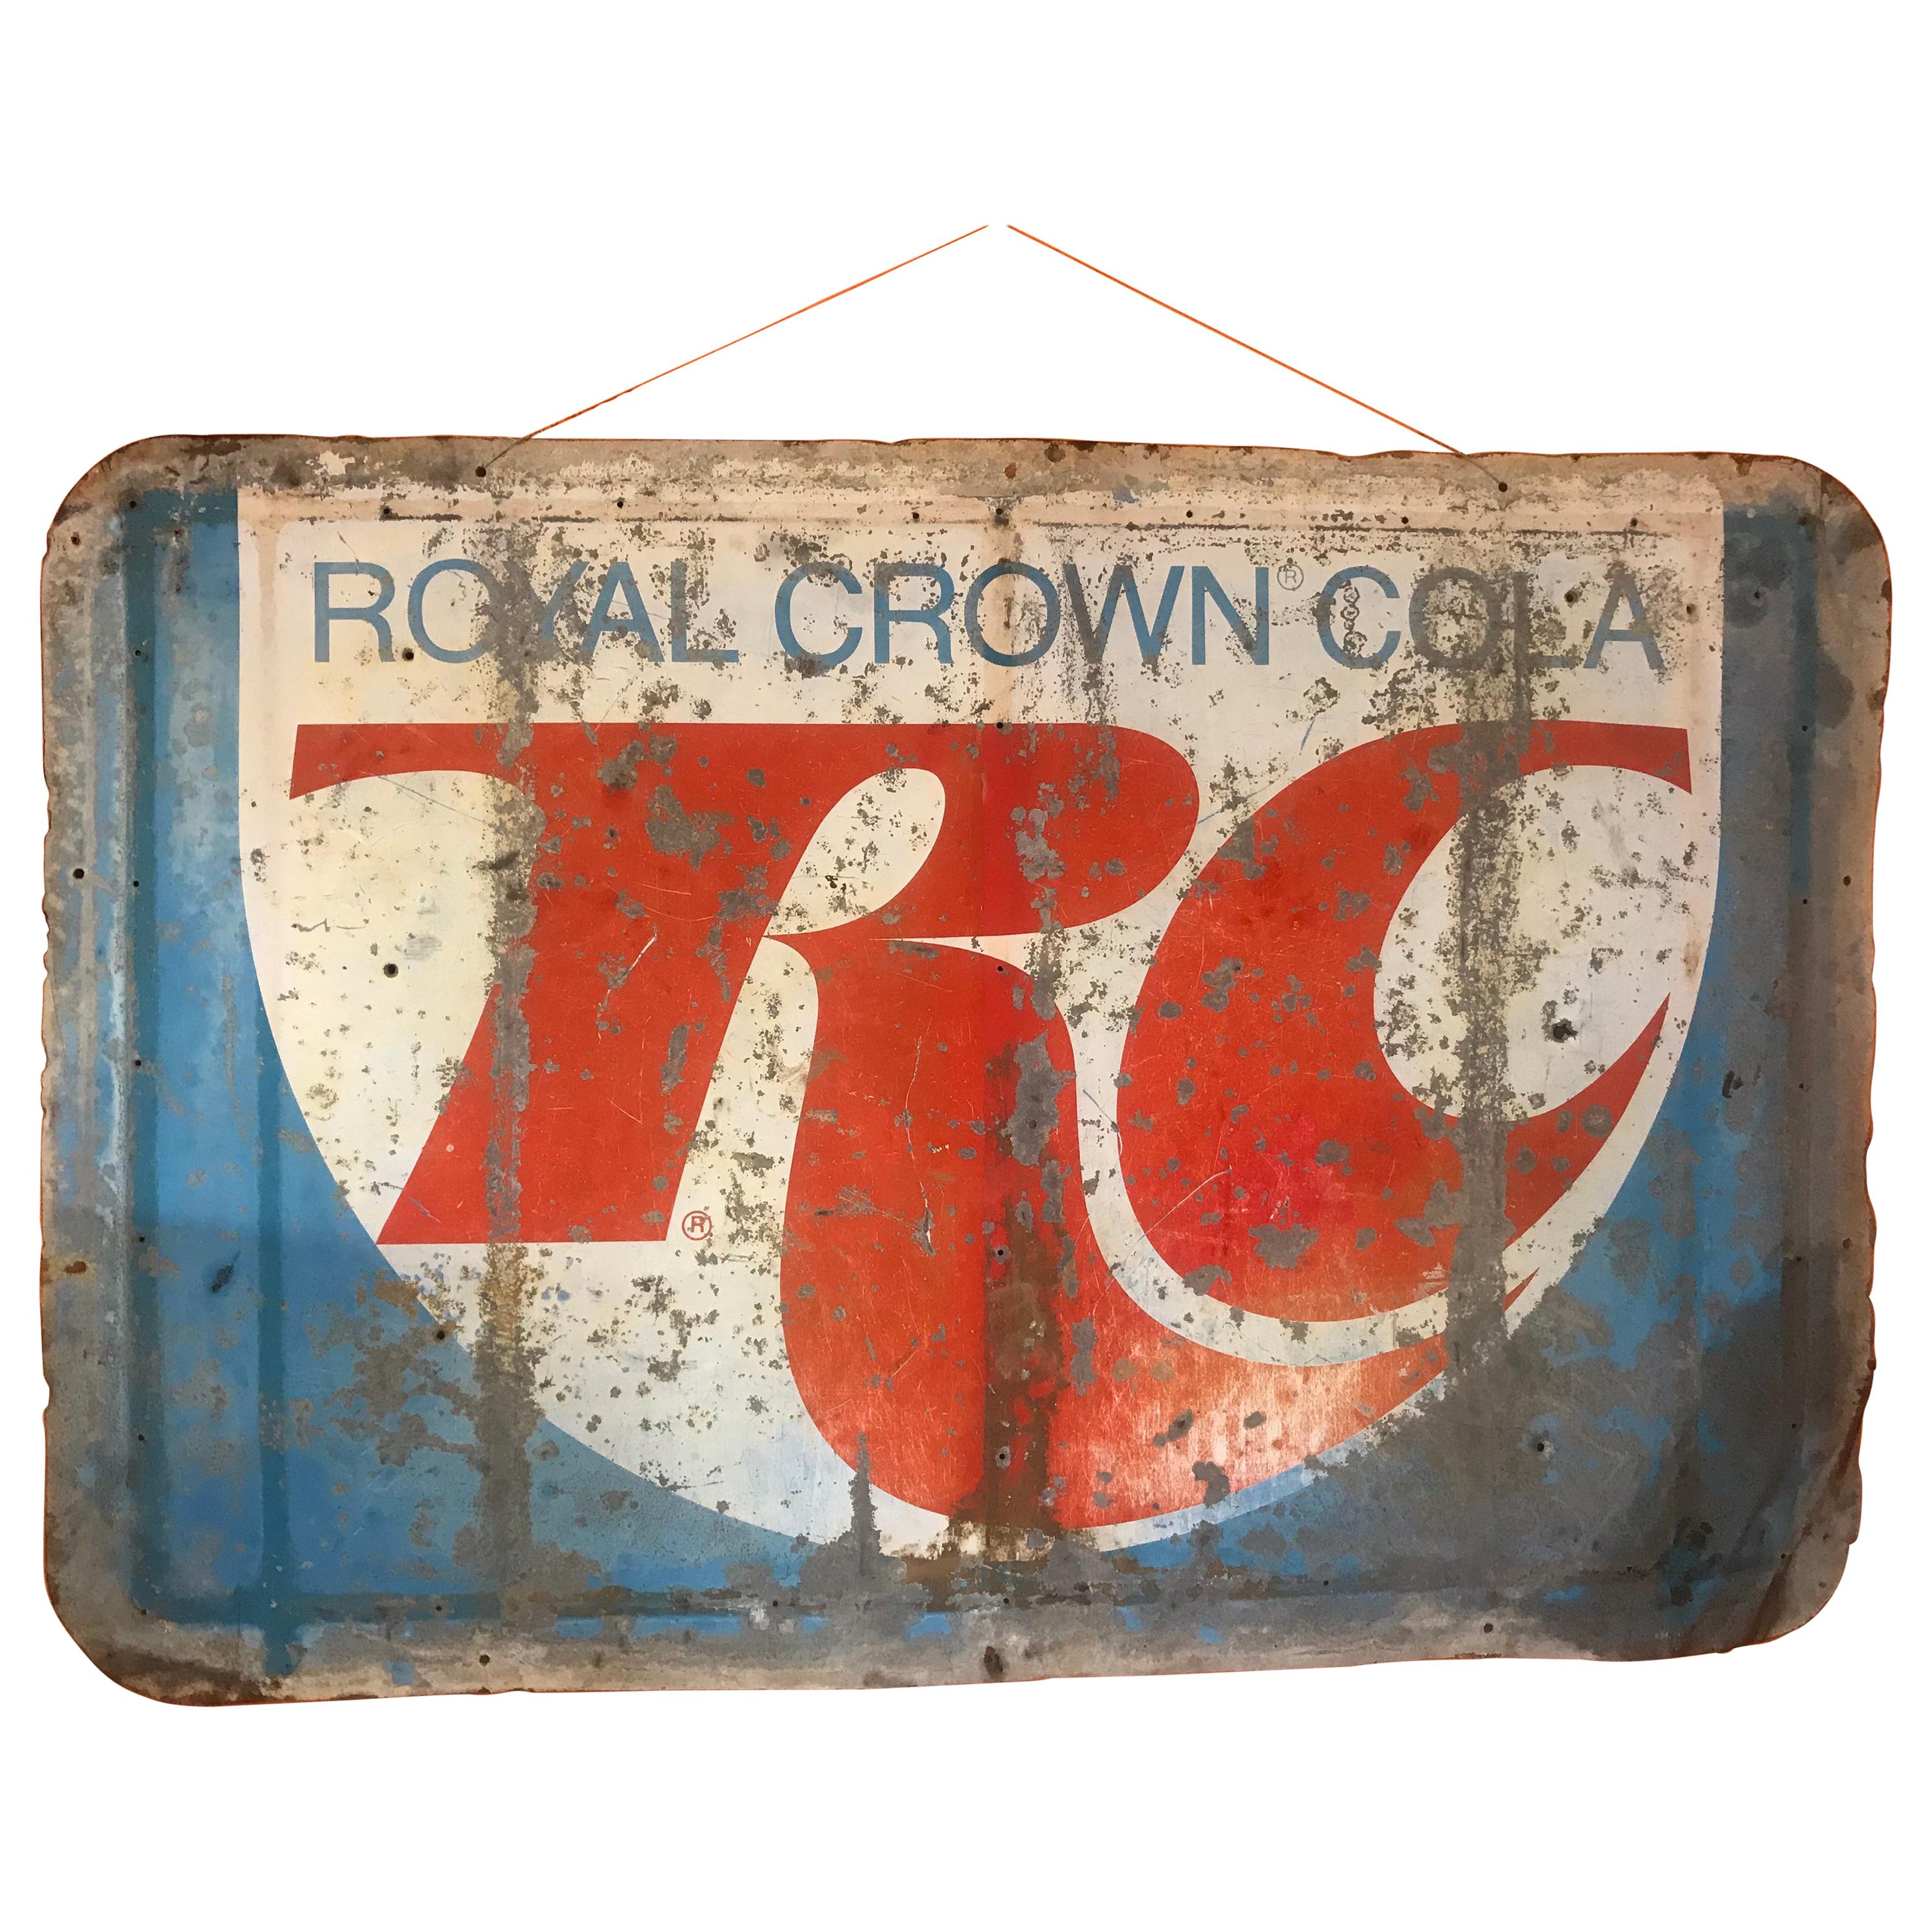 Vintage Distressed Royal Crown Cola Sign